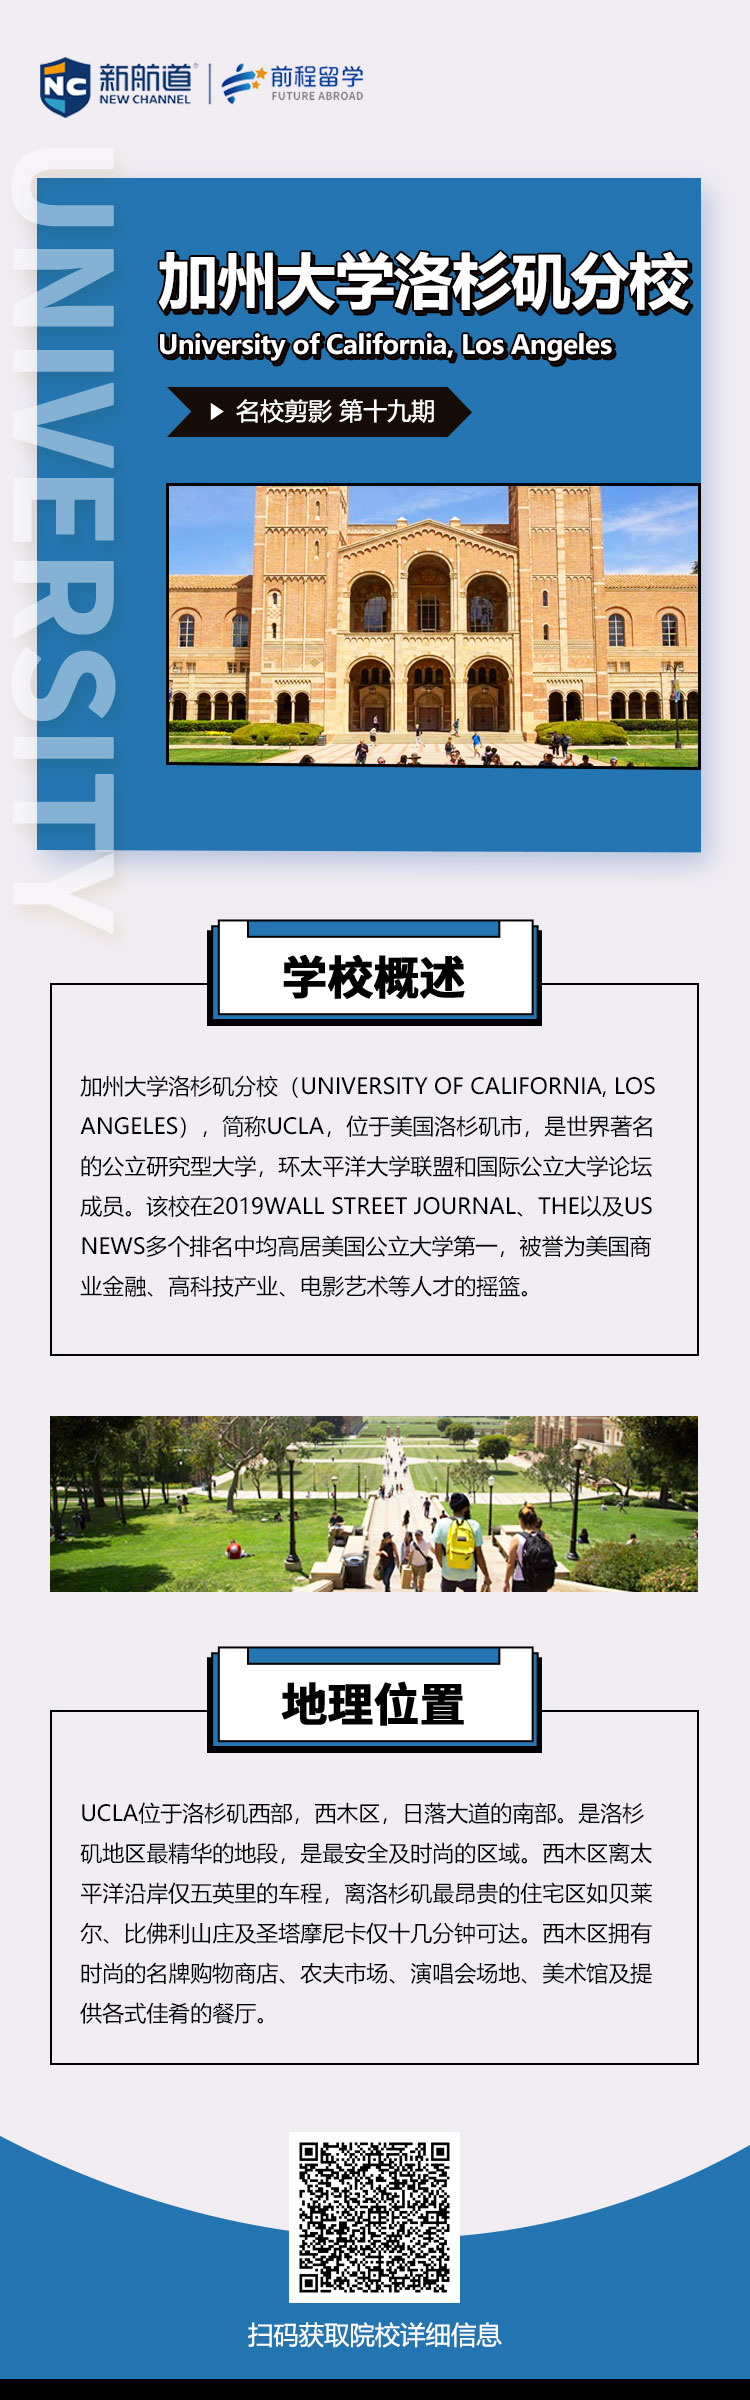 《剪影》之加州大学洛杉矶分校本科留学申请条件